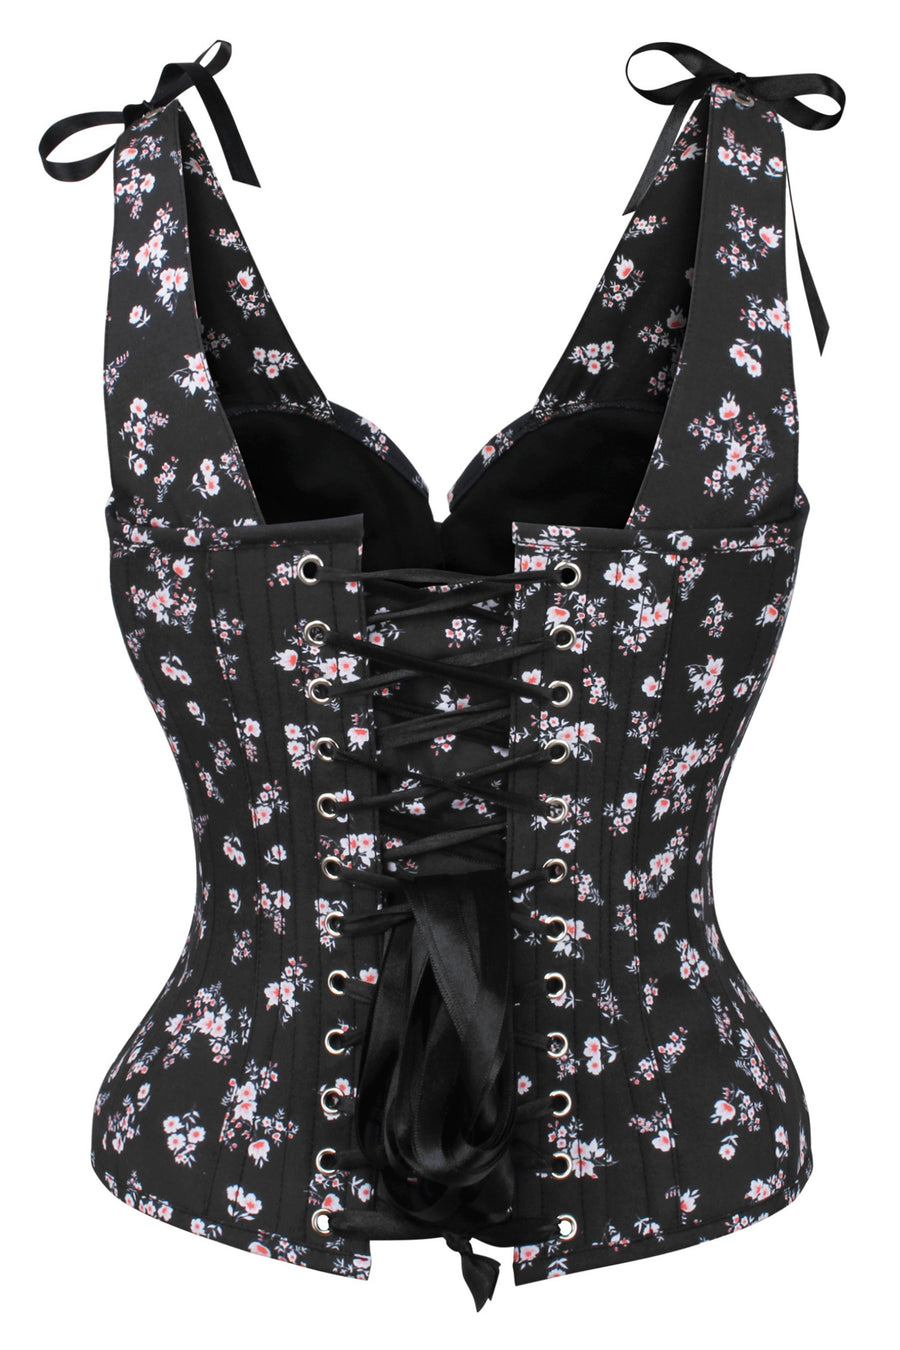 https://corset-story.com/cdn/shop/products/TYS5163_900x.jpg?v=1668131117